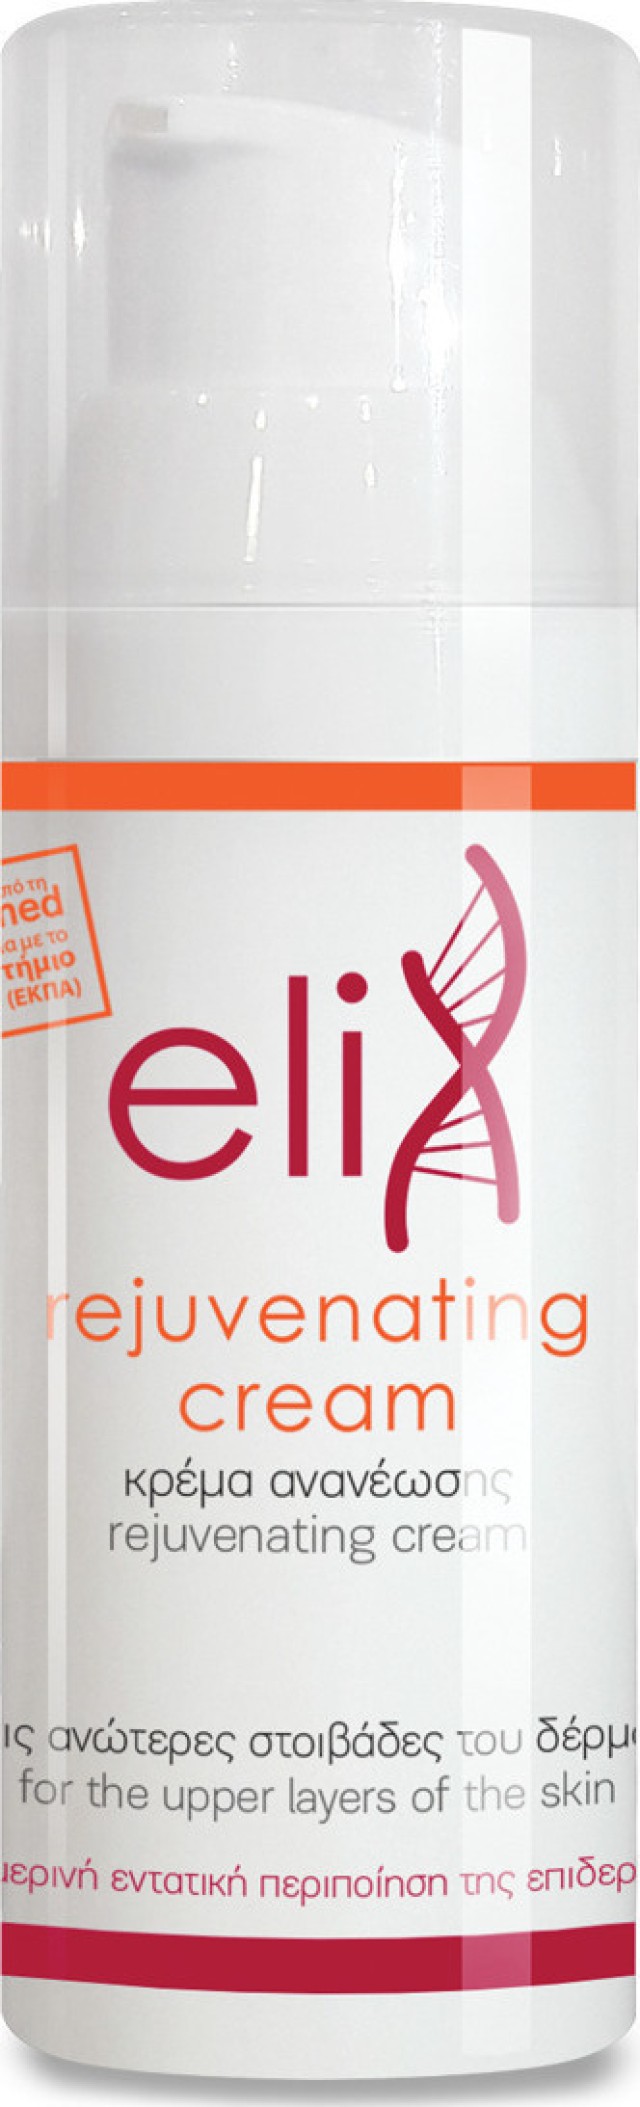 Genomed Elix Rejuvenating Cream Κρέμα Ανανέωσης για Πρόσωπο & Σώμα 50ml